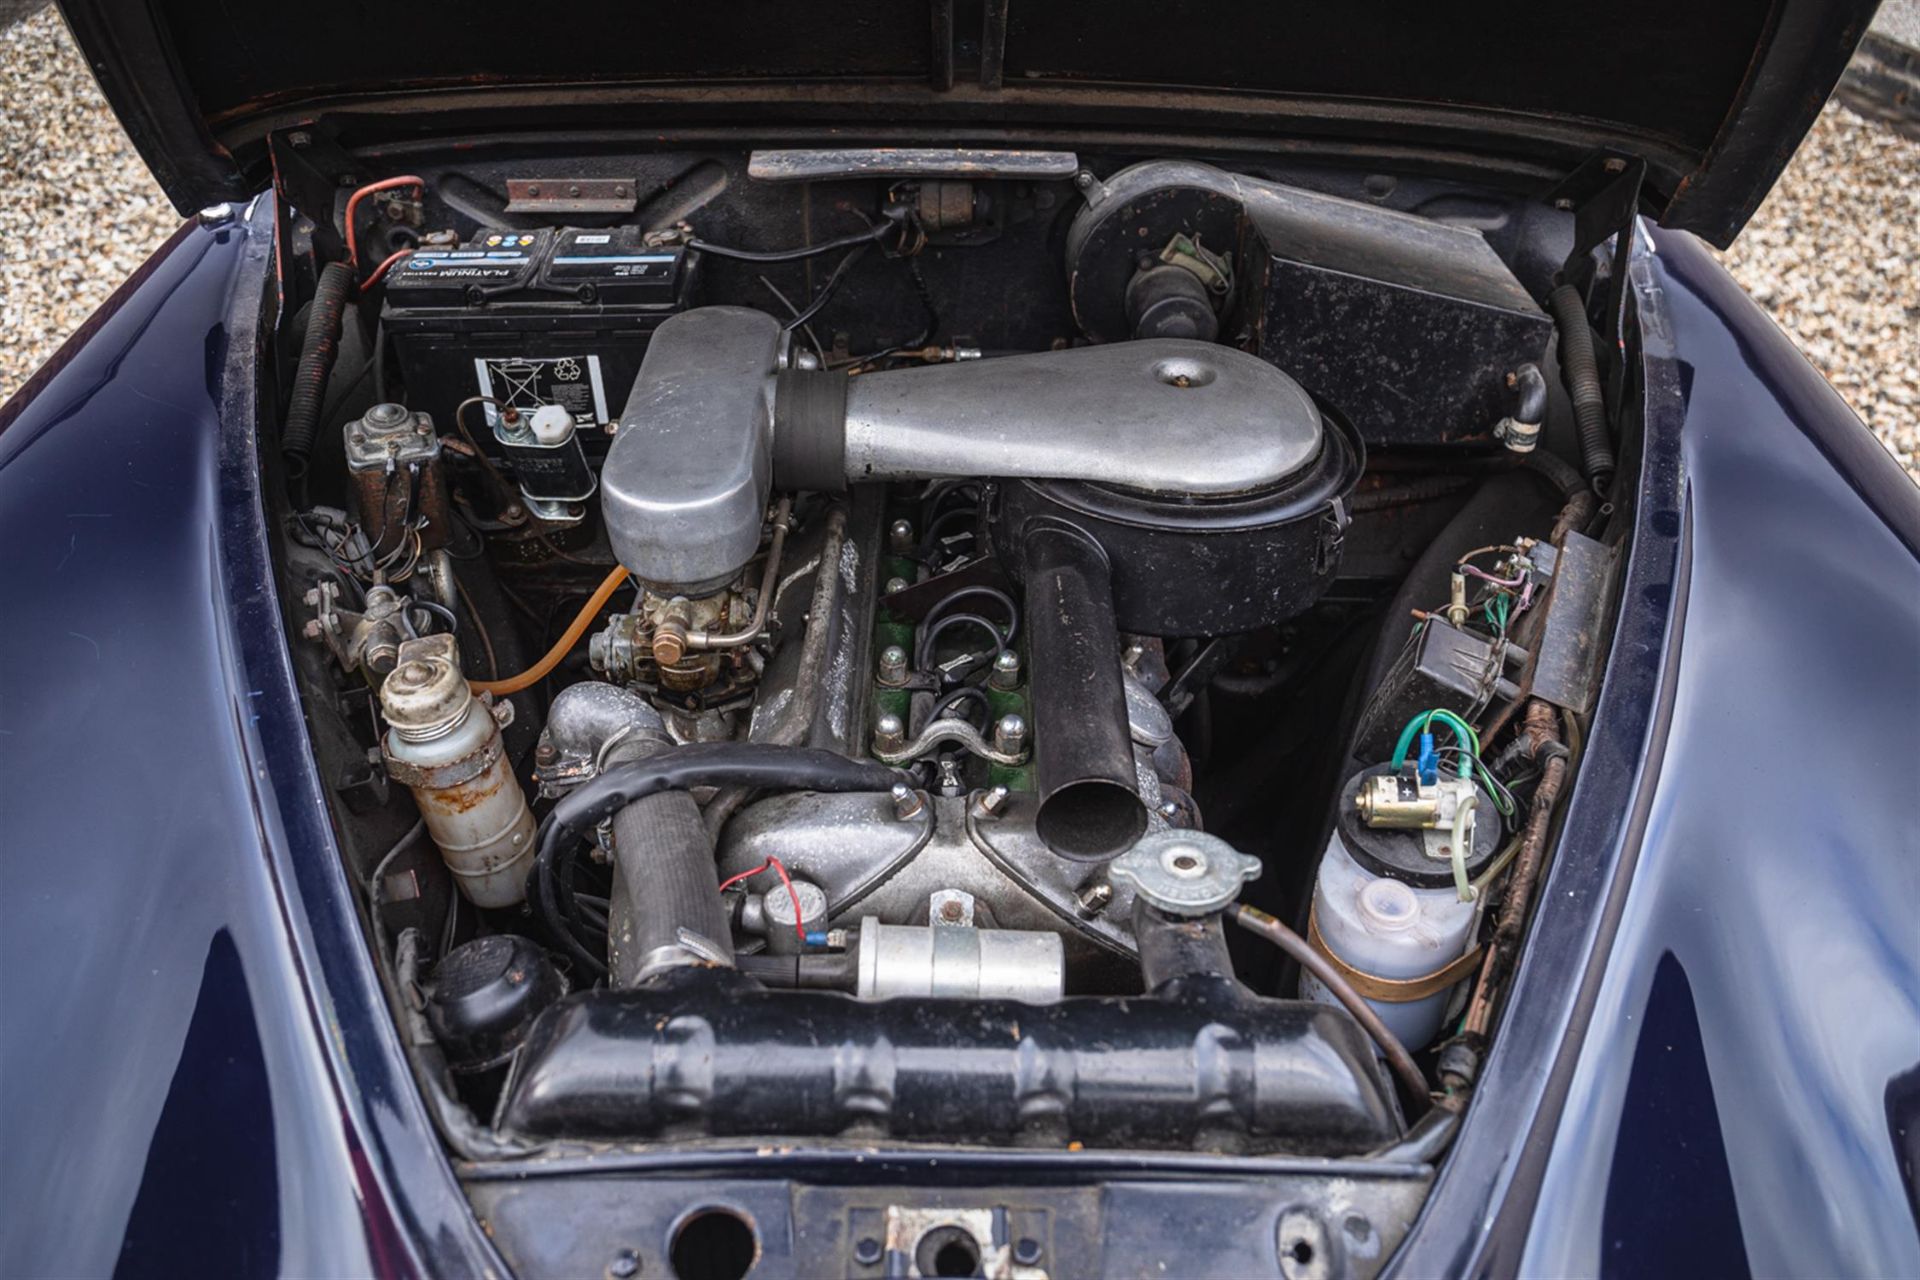 1967 Jaguar MK 2 2.4 Manual Overdrive - Image 3 of 10